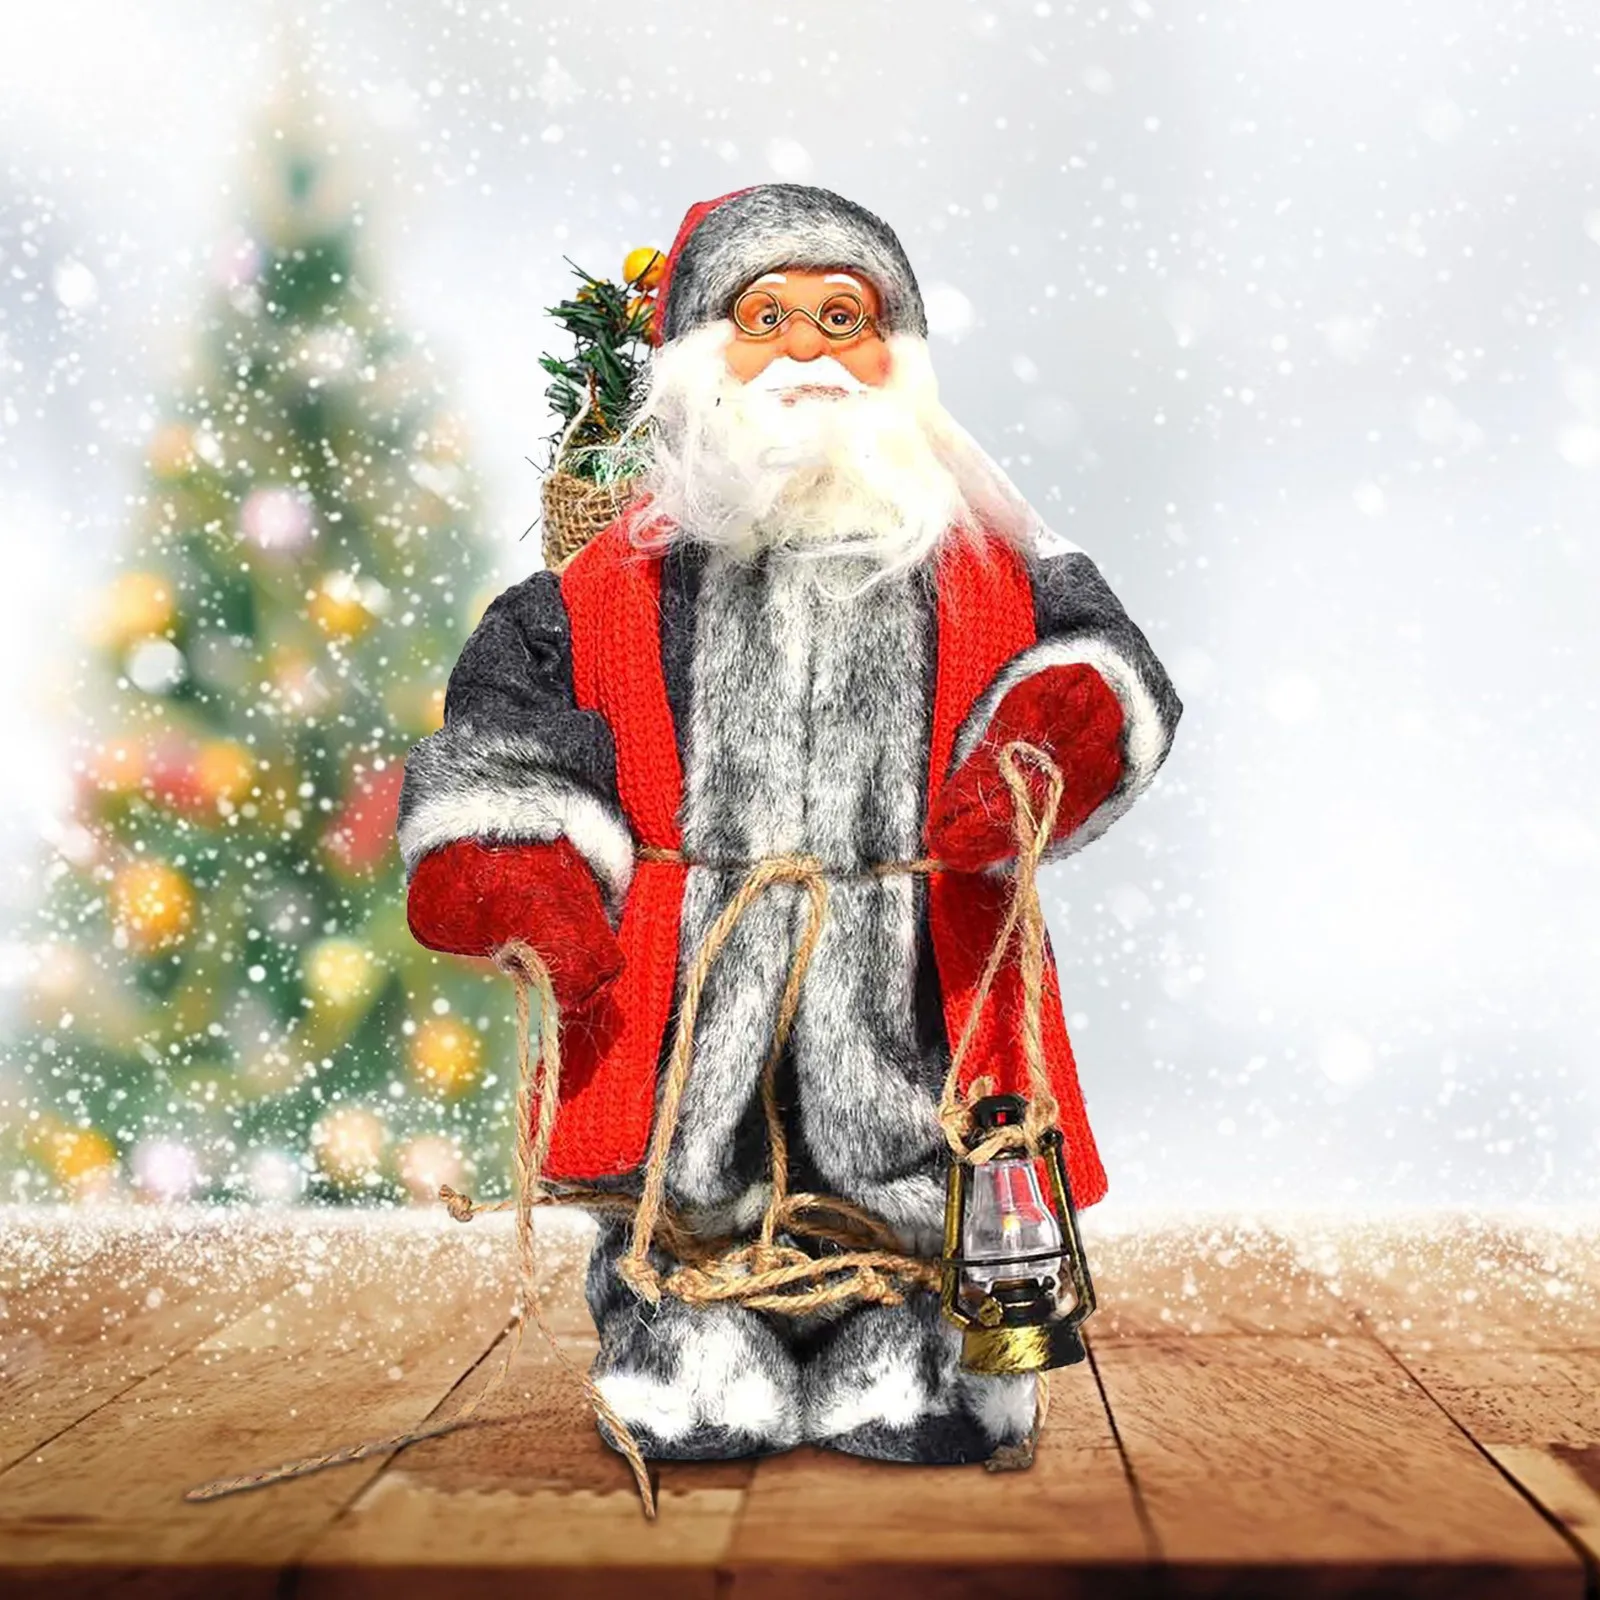 

Дед Мороз декоративная настольная проекция Рождественская елка украшение Санта Клаус кукла игрушка декоративная кукла